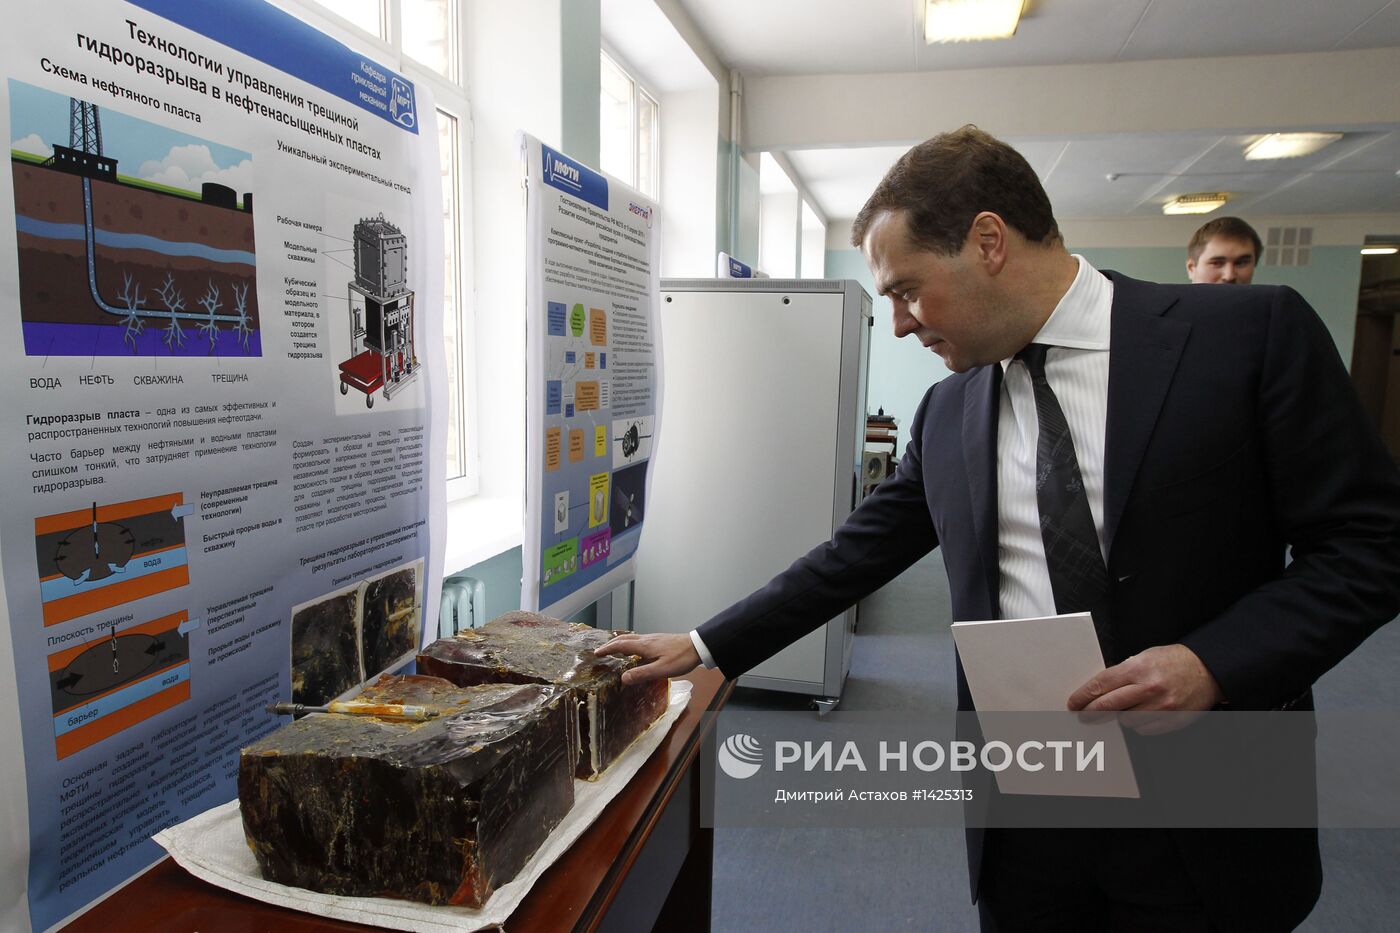 Д.Медведев посетил Московский физико-технический институт